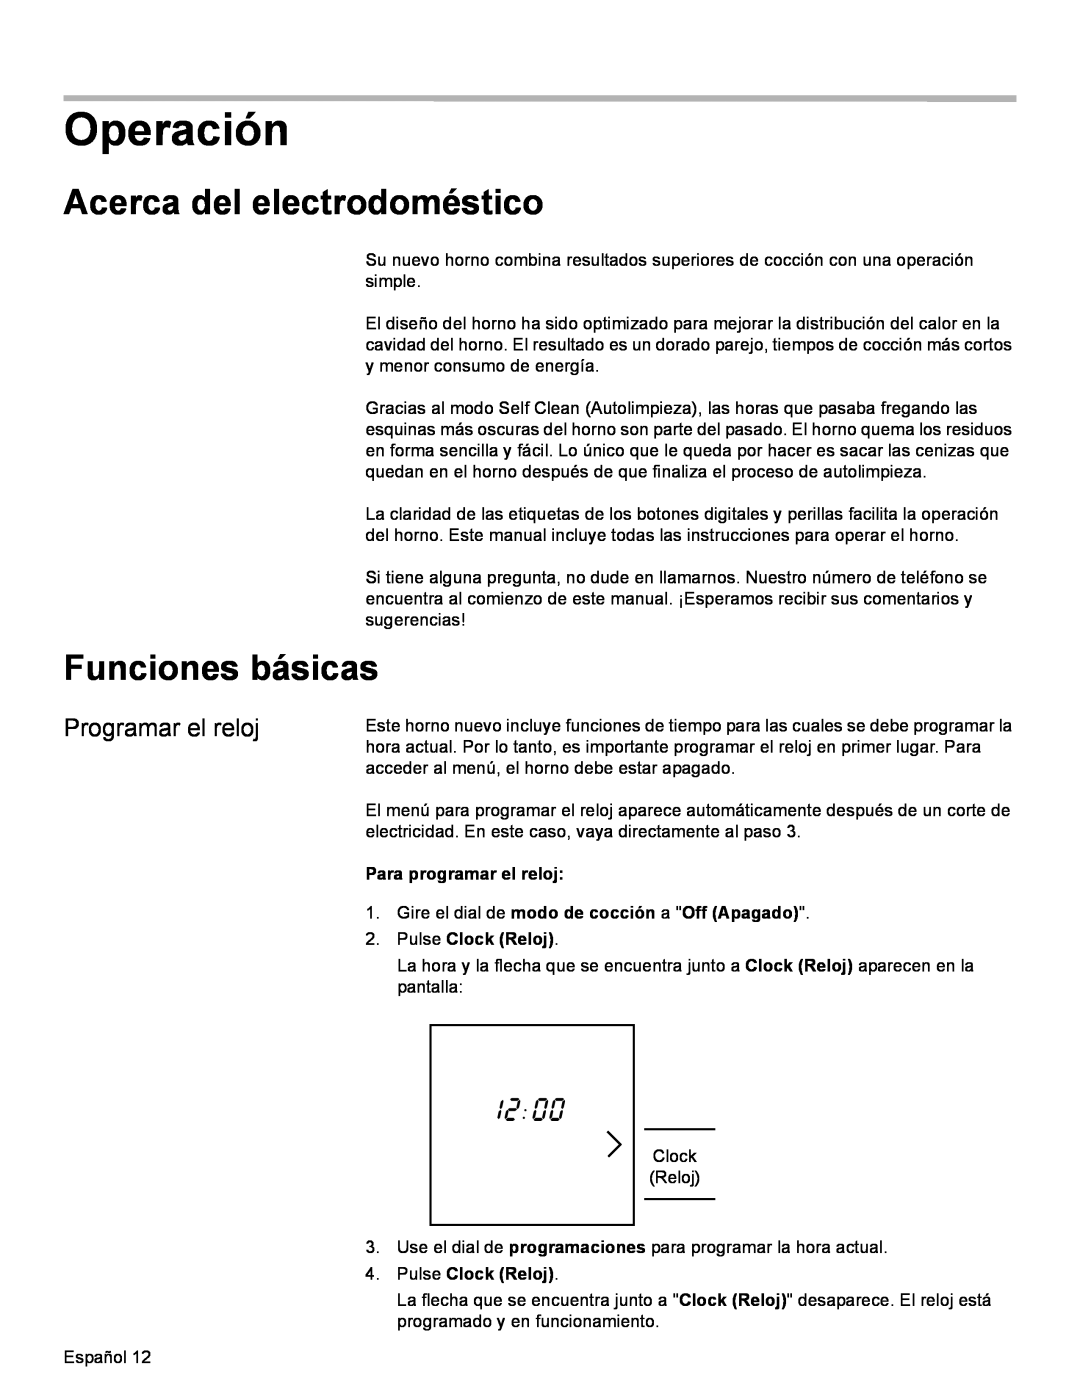 Bosch Appliances HBL35, HBN34, HBN35 manual Operación, Acerca del electrodoméstico, Funciones básicas 